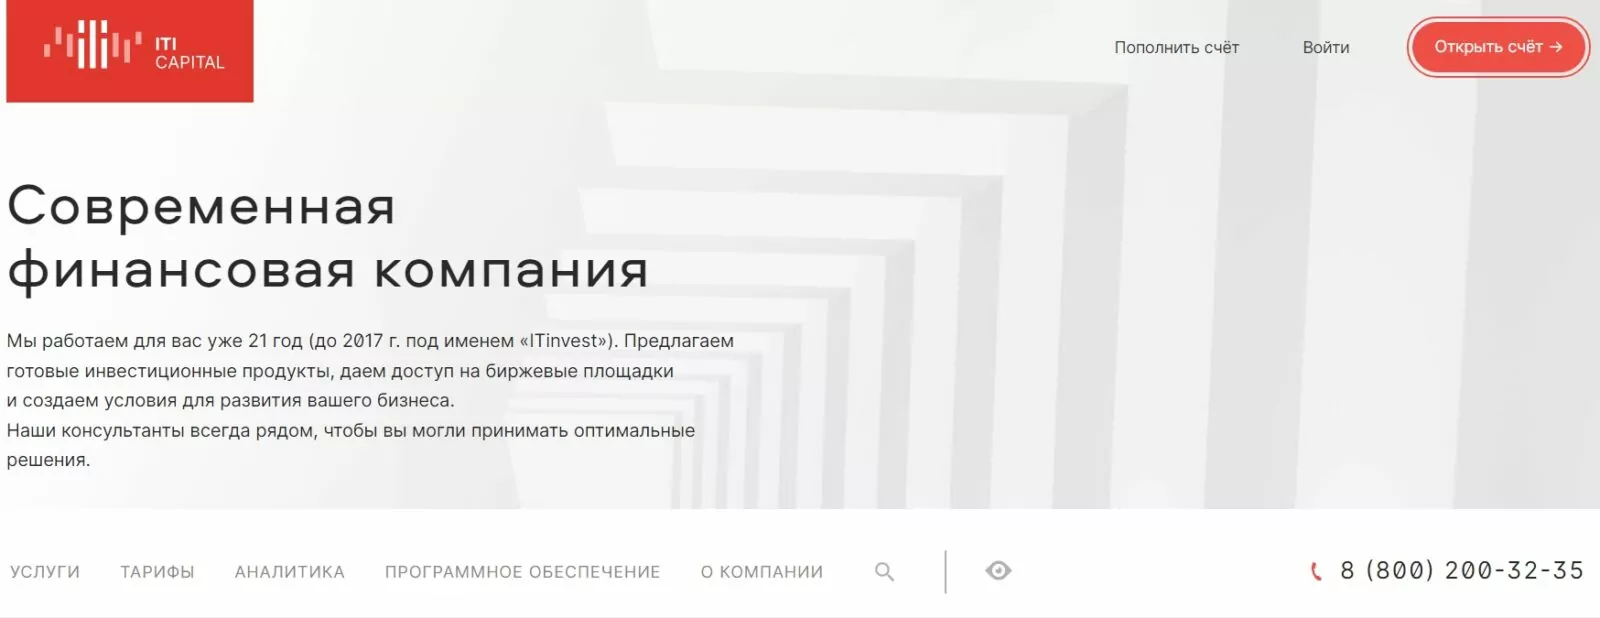 ITI Capital – сайт российской брокерской компании